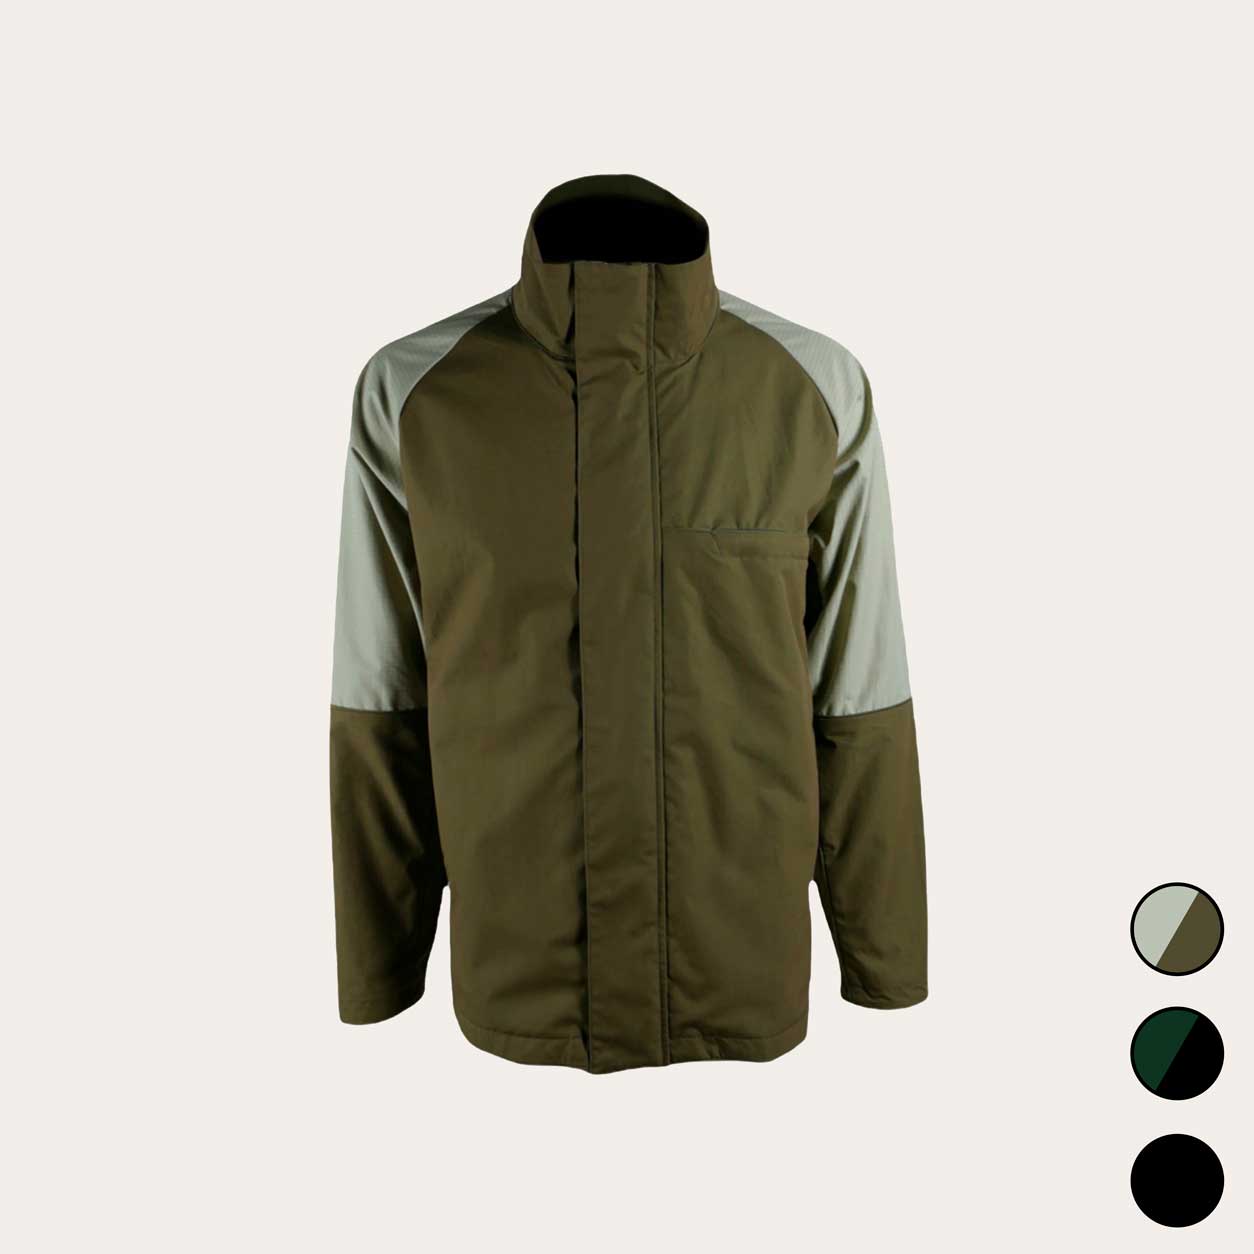 Baseline Shell Jacket Full Zip – Men’s